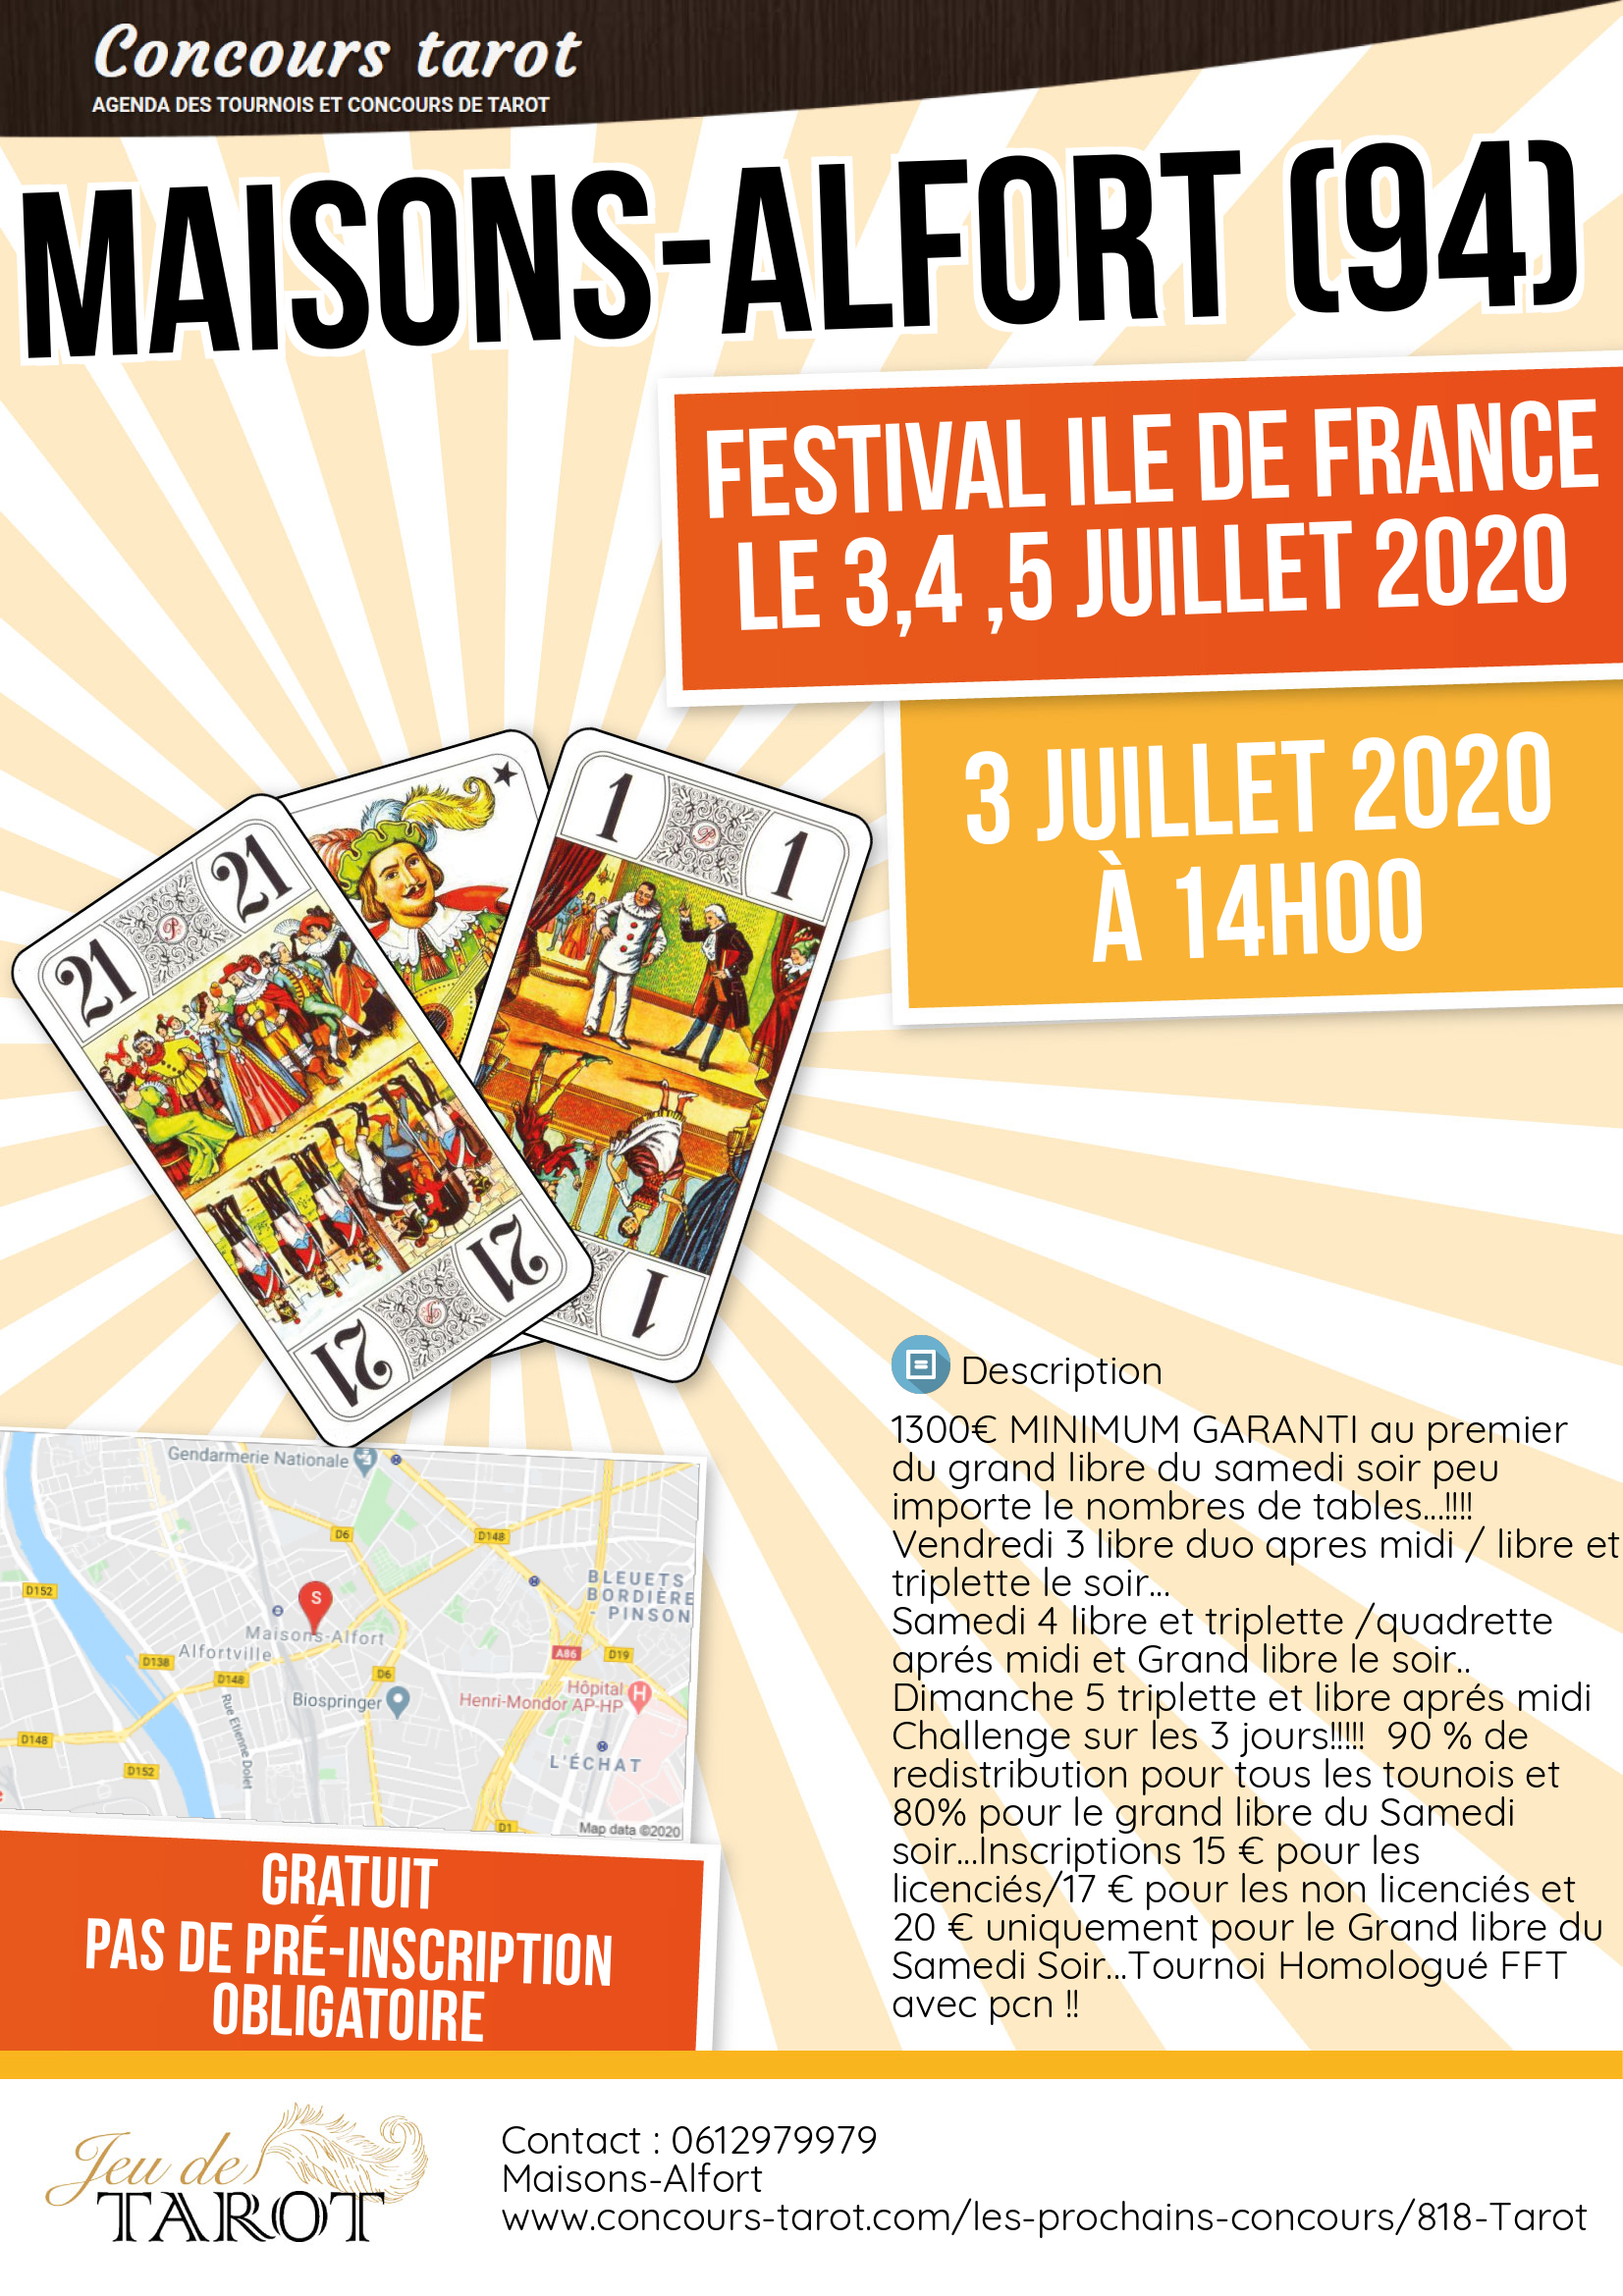 Festival Ile de France le 3 4  5 Juillet 2020